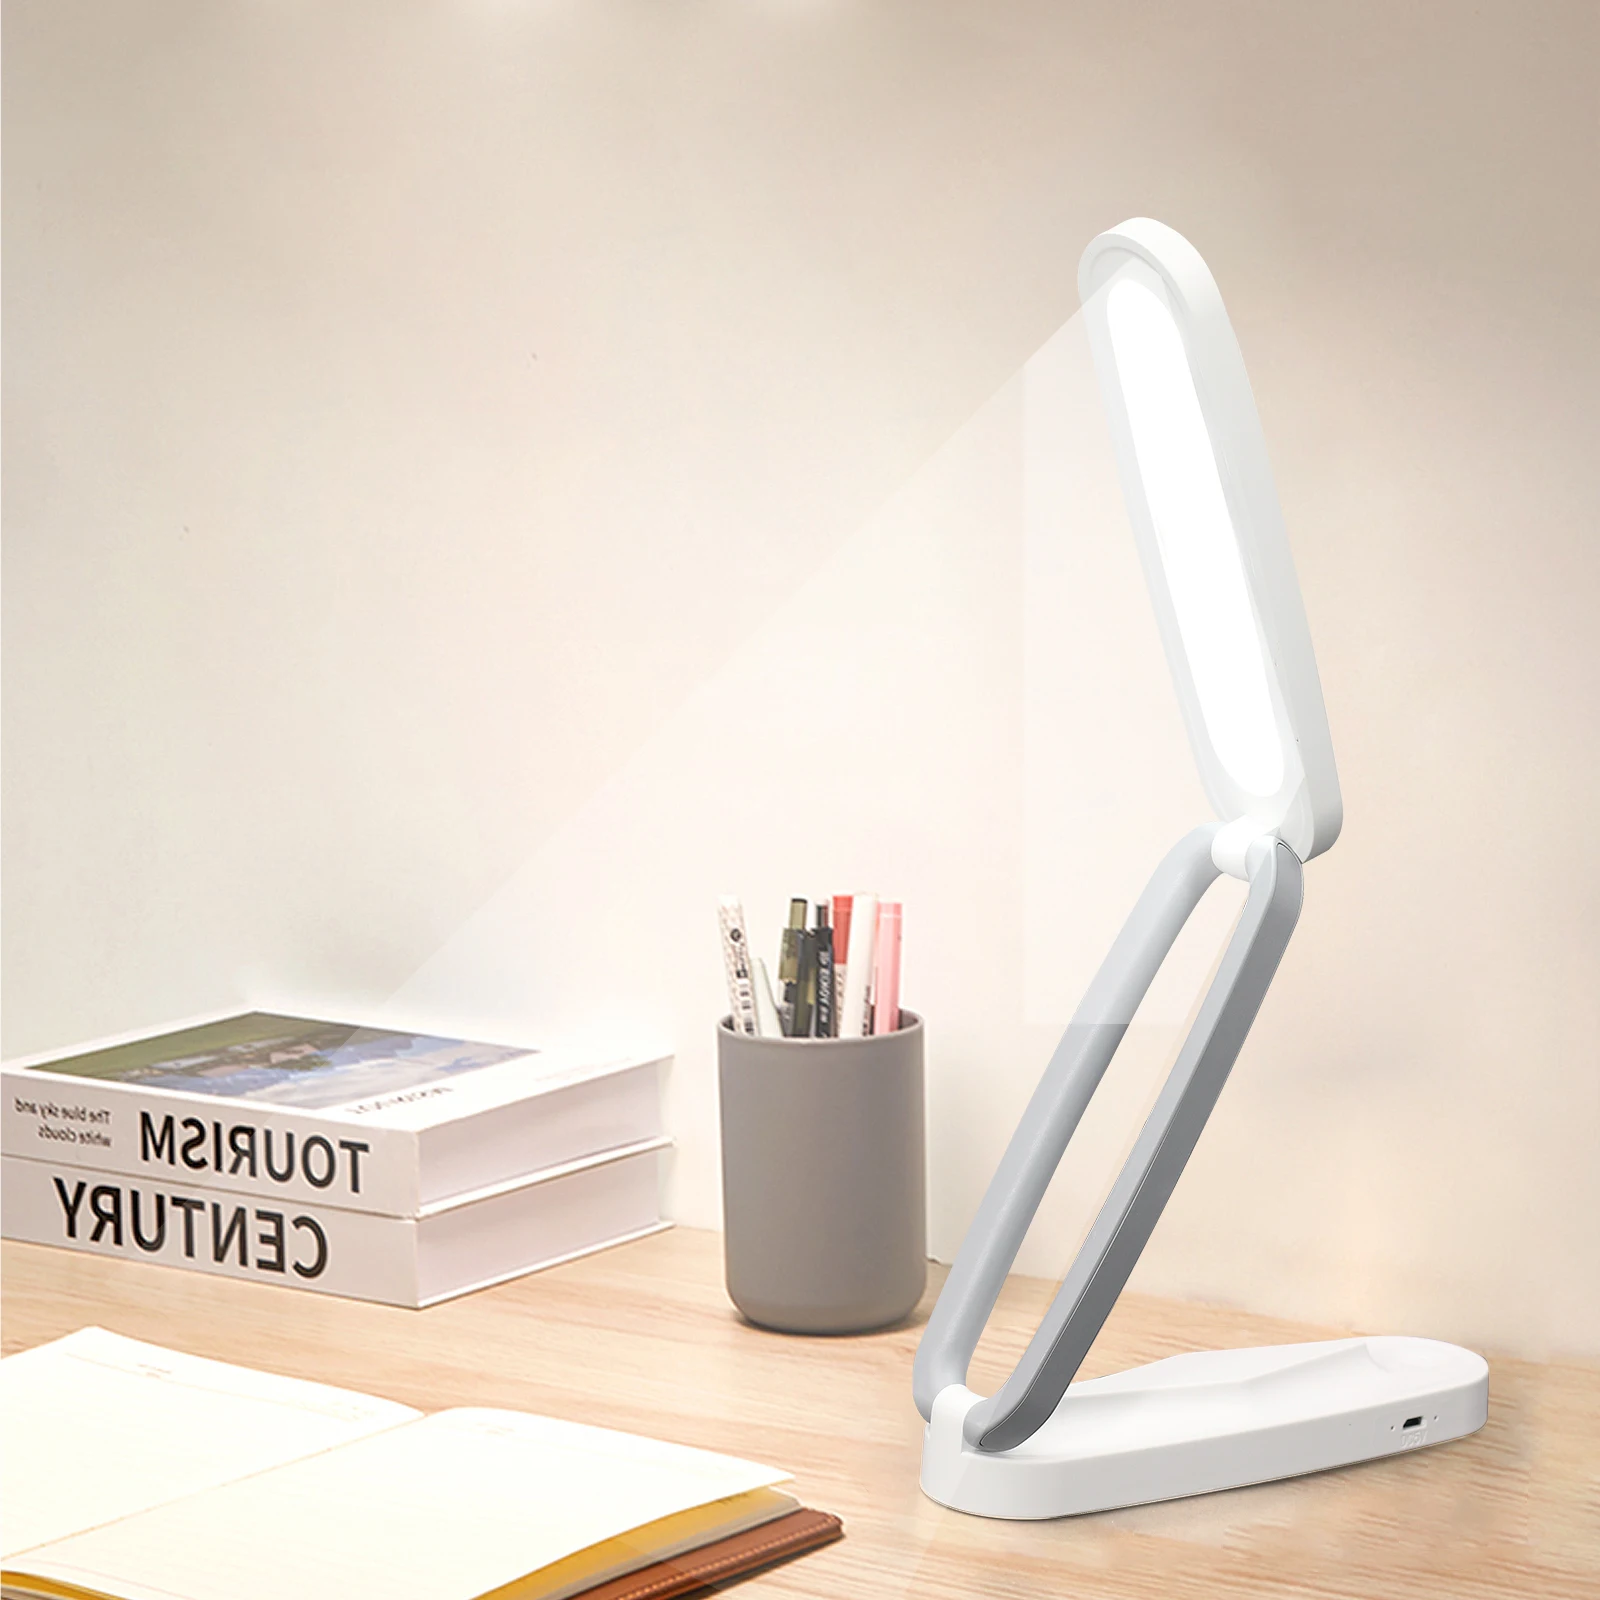 Alumiini Taitto-Pöytä, Lamppu, Korkea Laatu Desk Valo Ei Blue-Ray-Silmien Suojaus Led USB-Latausta, Lukeminen Valo, Pieni Pöytä Lamppu - 3